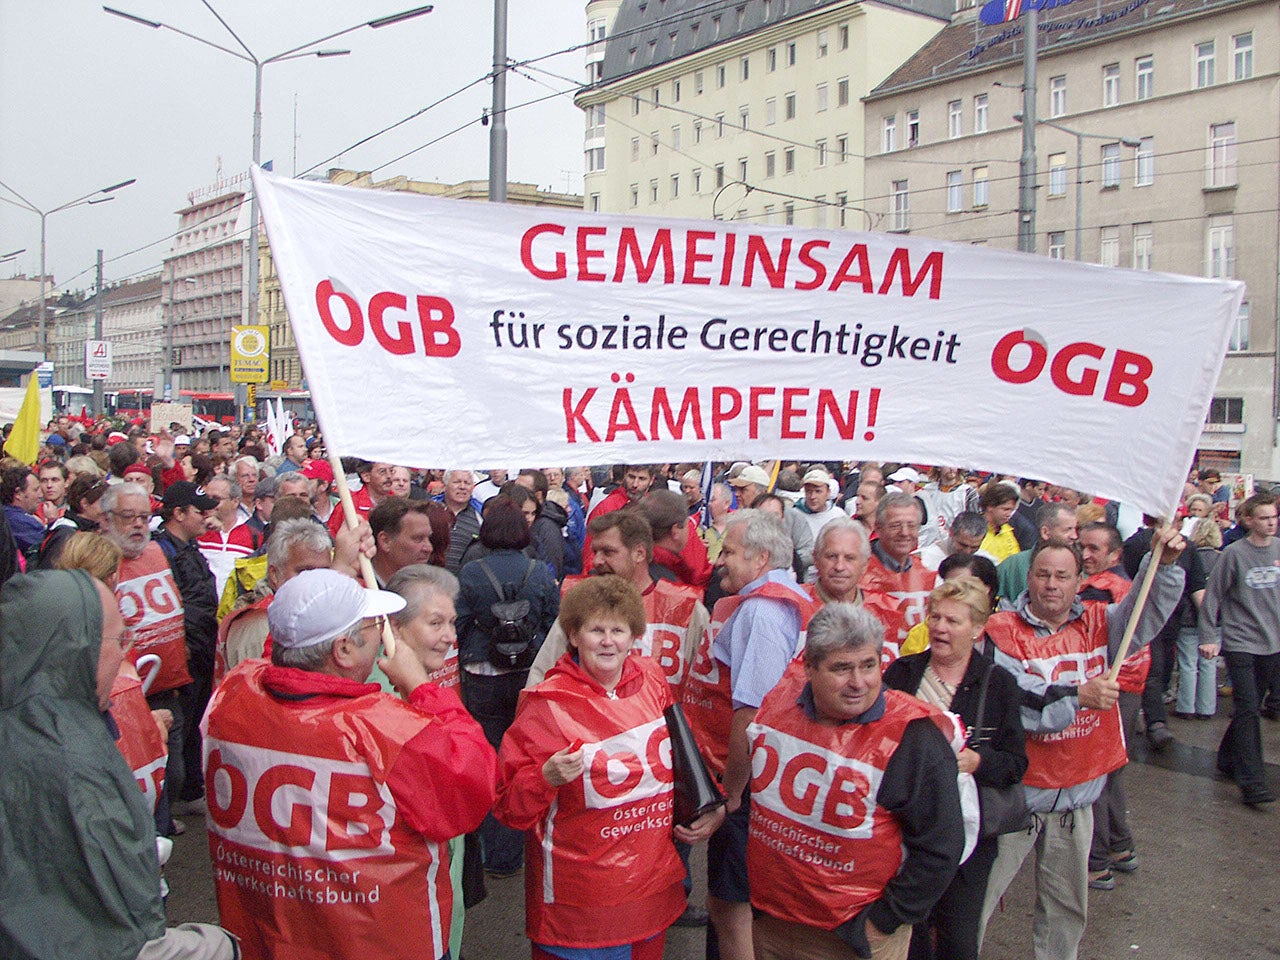 Am 13. Mai 2003 demonstrierten rund 200.000 Menschen gegen die Pensionsreform. Am Bild ist ein Banner: ÖGB, Gemeinsam für soziale Gerechtigkeit. Frauen und Männer tragen roten Regenschutz mit ÖGB-Aufdruck